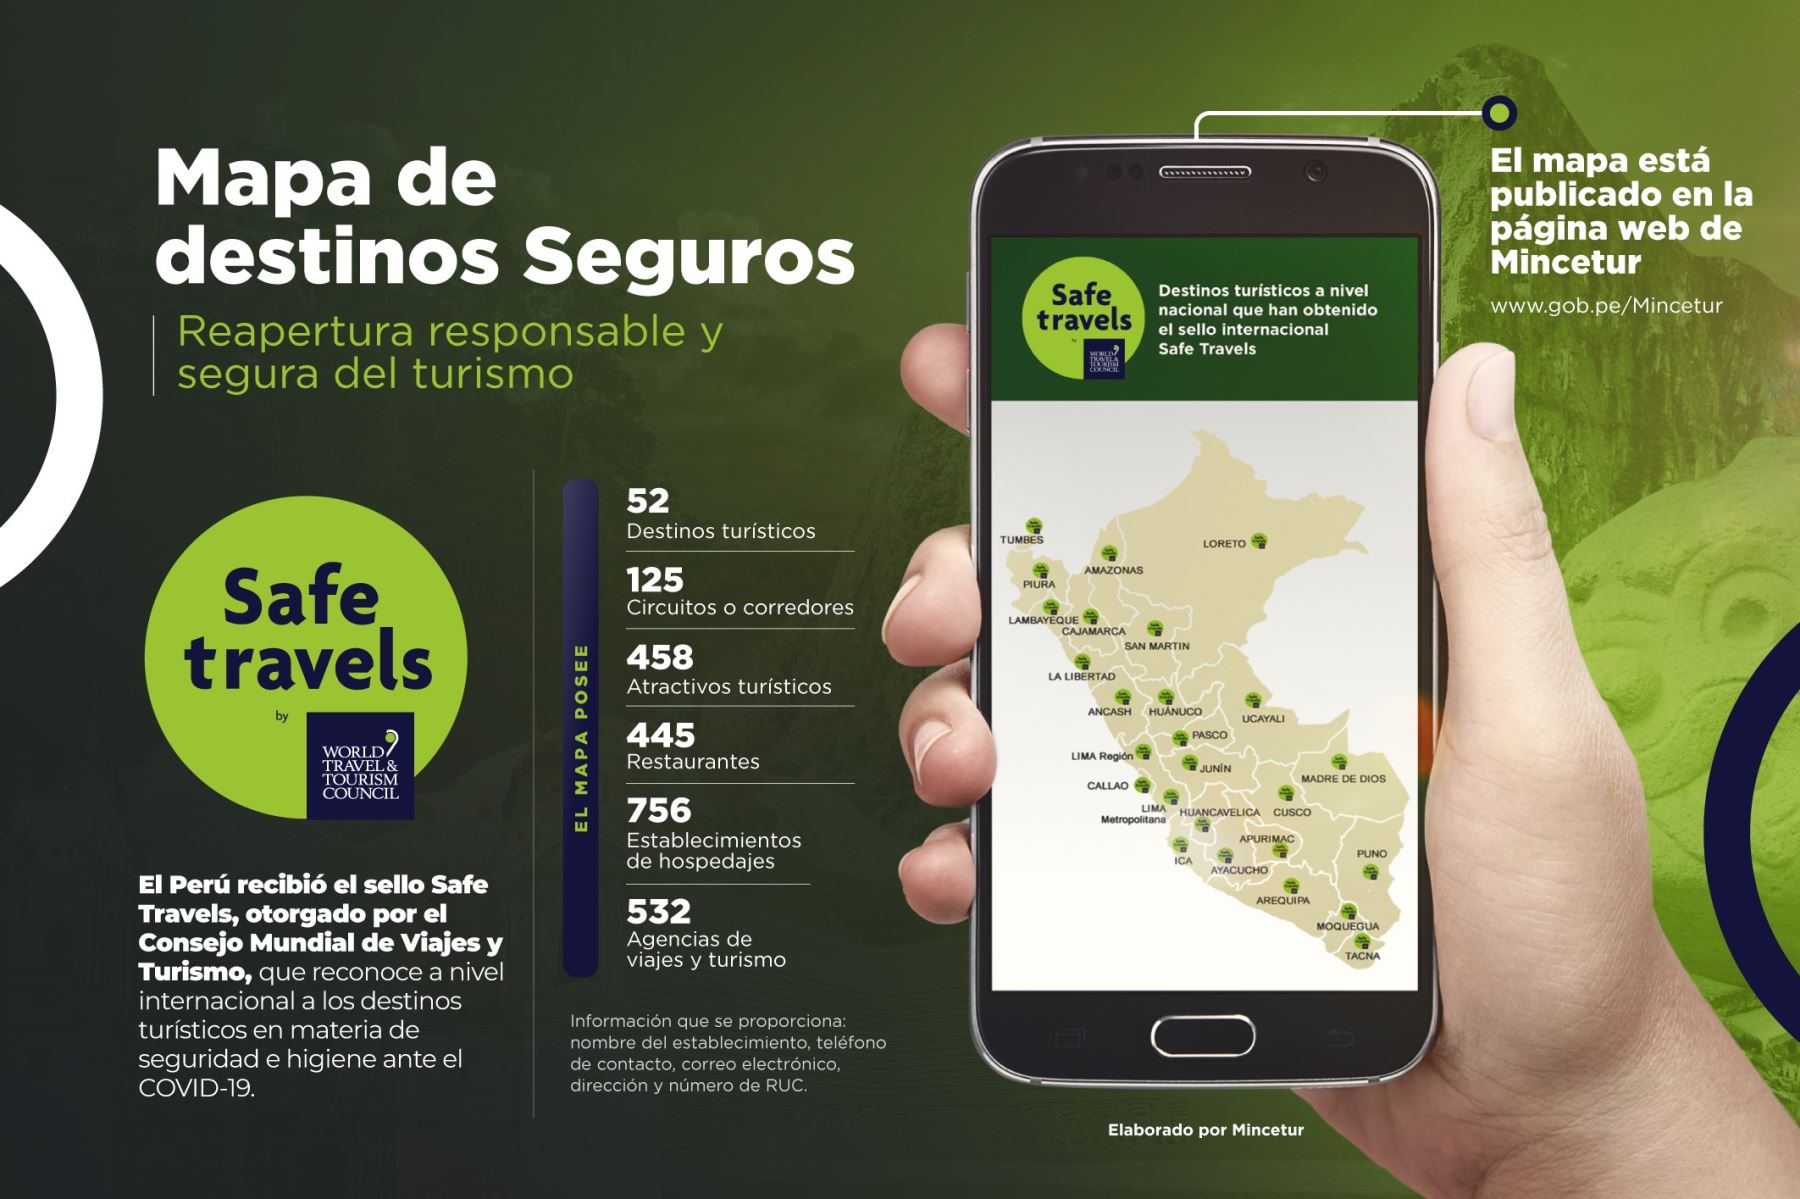 Mincetur presentó un mapa virtual que muestra los destinos, atractivos y establecimientos turísticos de todas las regiones del Perú que cuentan con el sello Safe Travels que los reconoce como destinos seguros ante el covid-19.